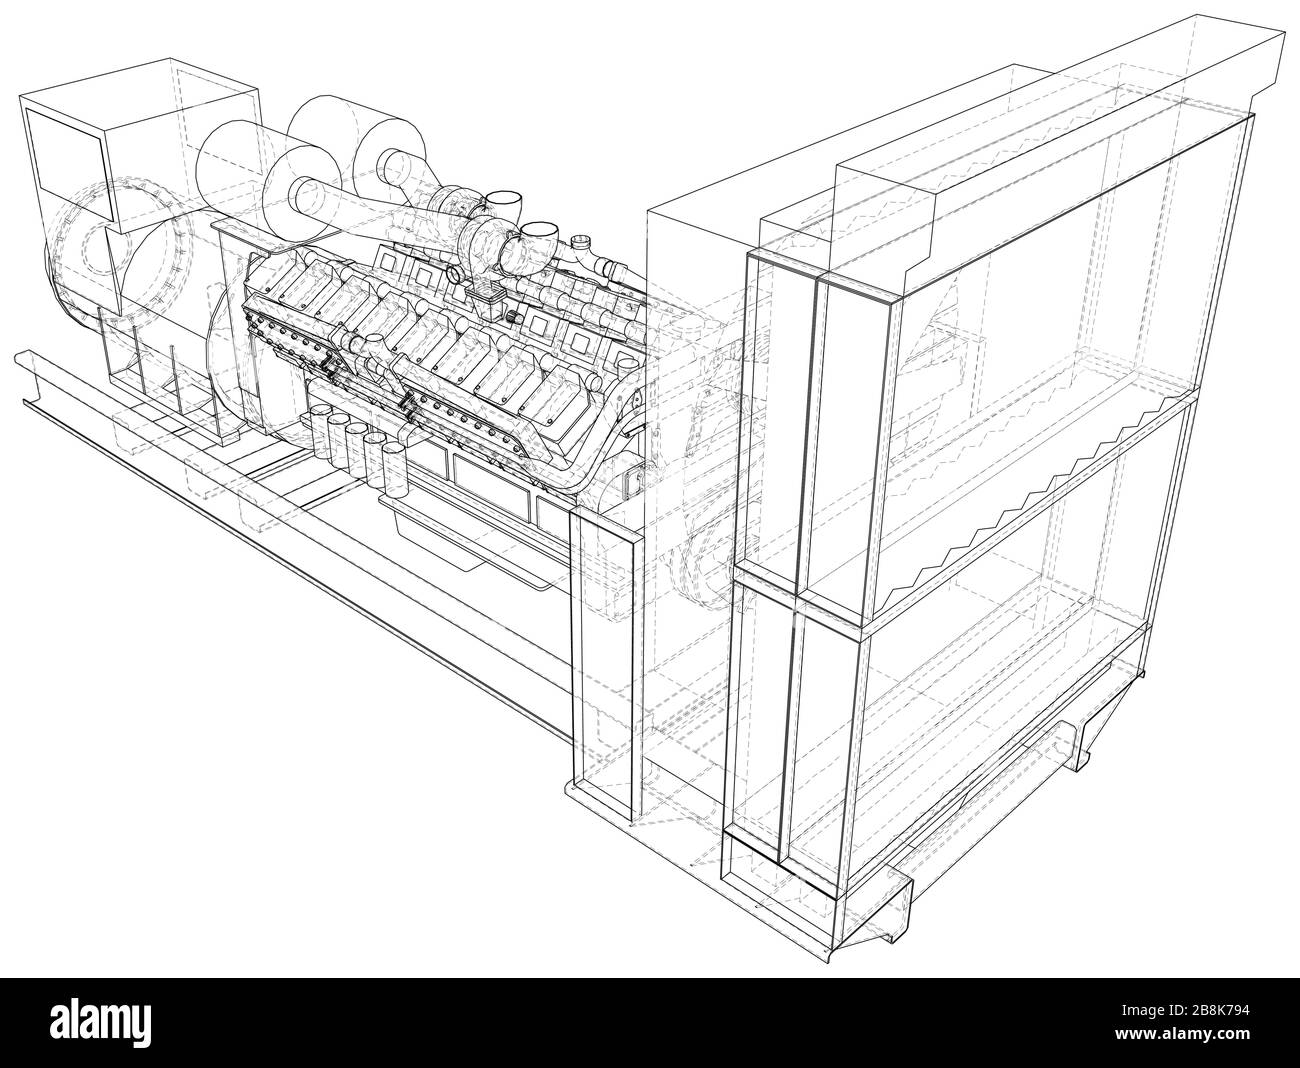 Gasmotor. Gasmotor ist ein Verbrennungsmotor, der mit einem Treibstoff betrieben wird. Drahtrahmenlinie isoliert auf weiß. Vektordarstellung von 3d. Stock Vektor